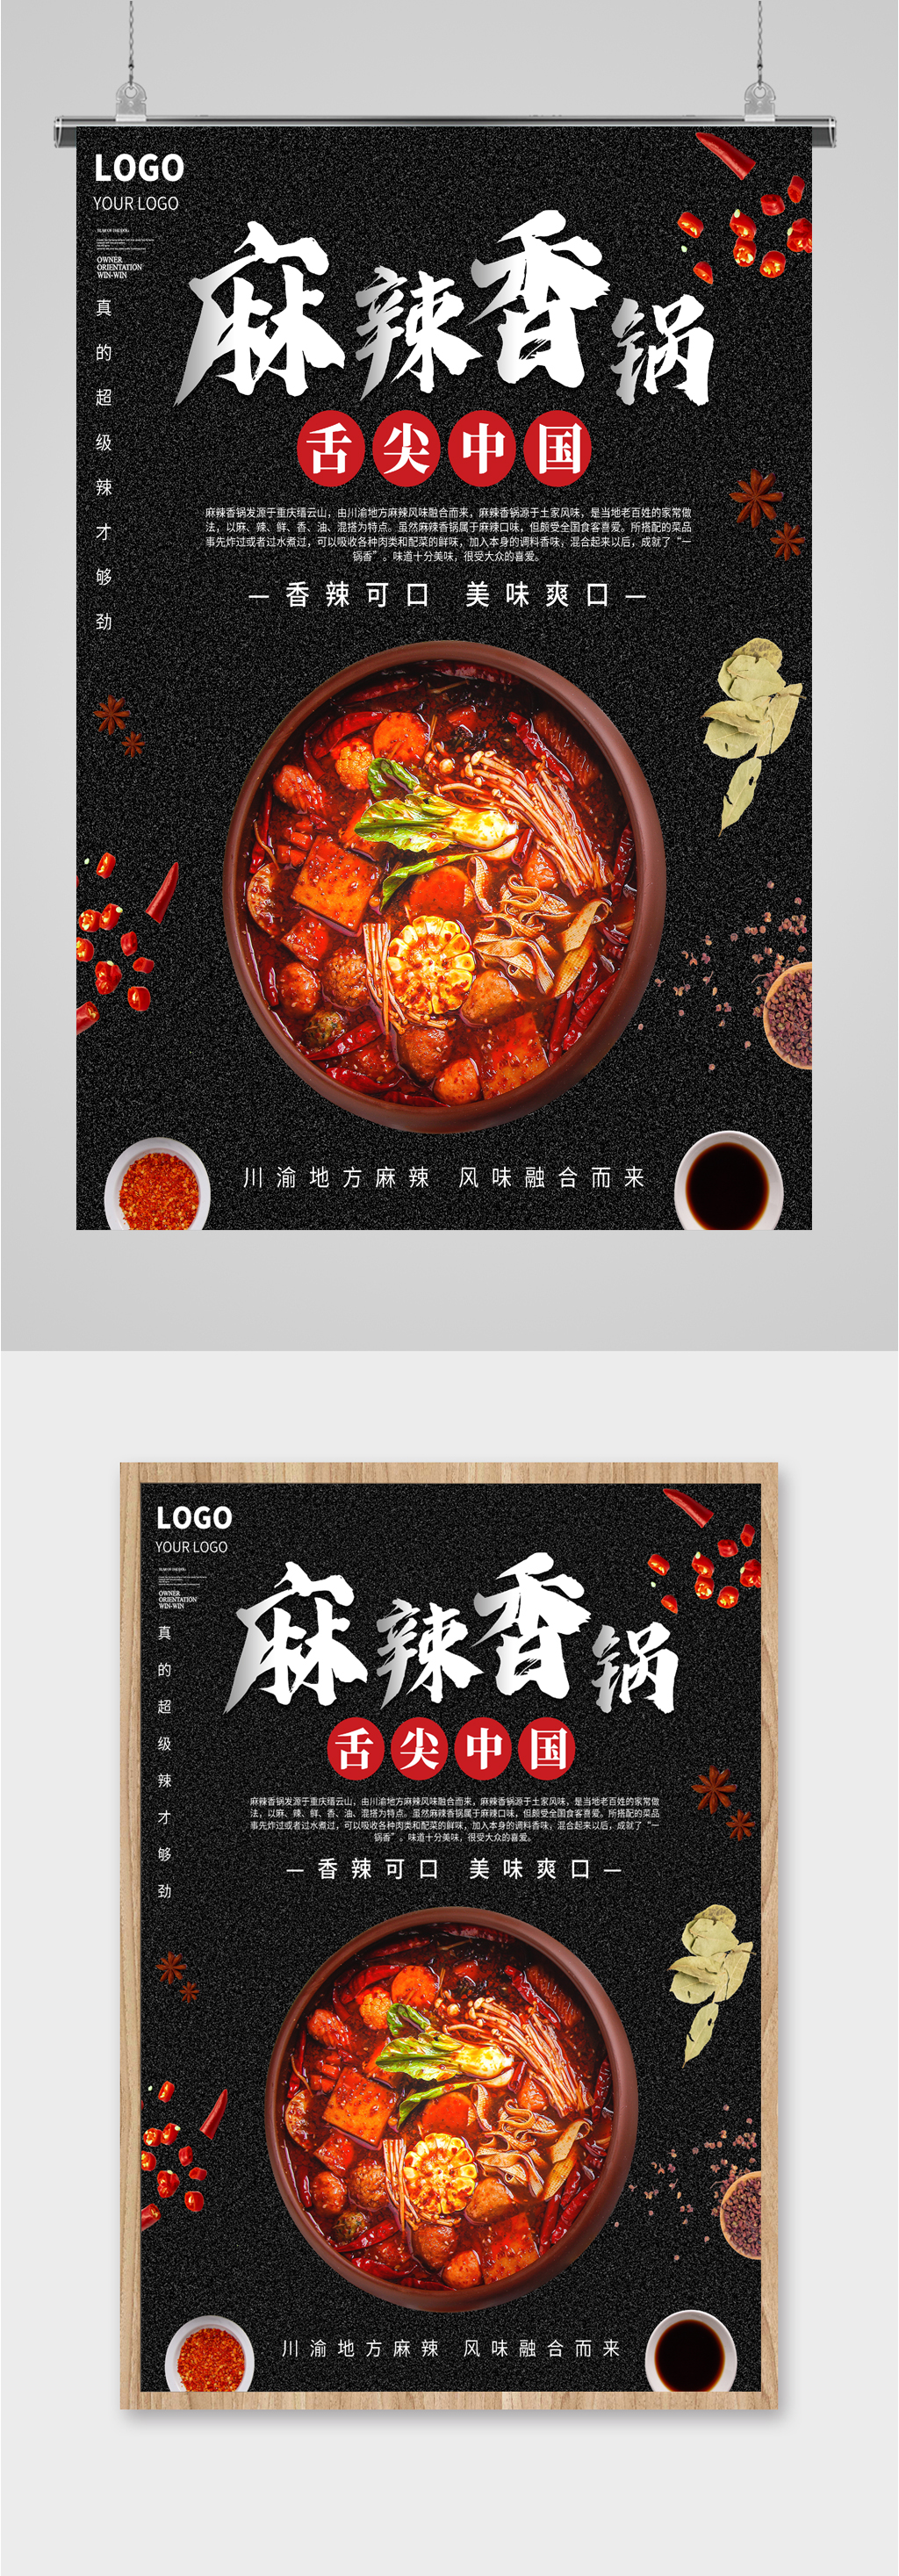 麻辣香锅特色广告语图片